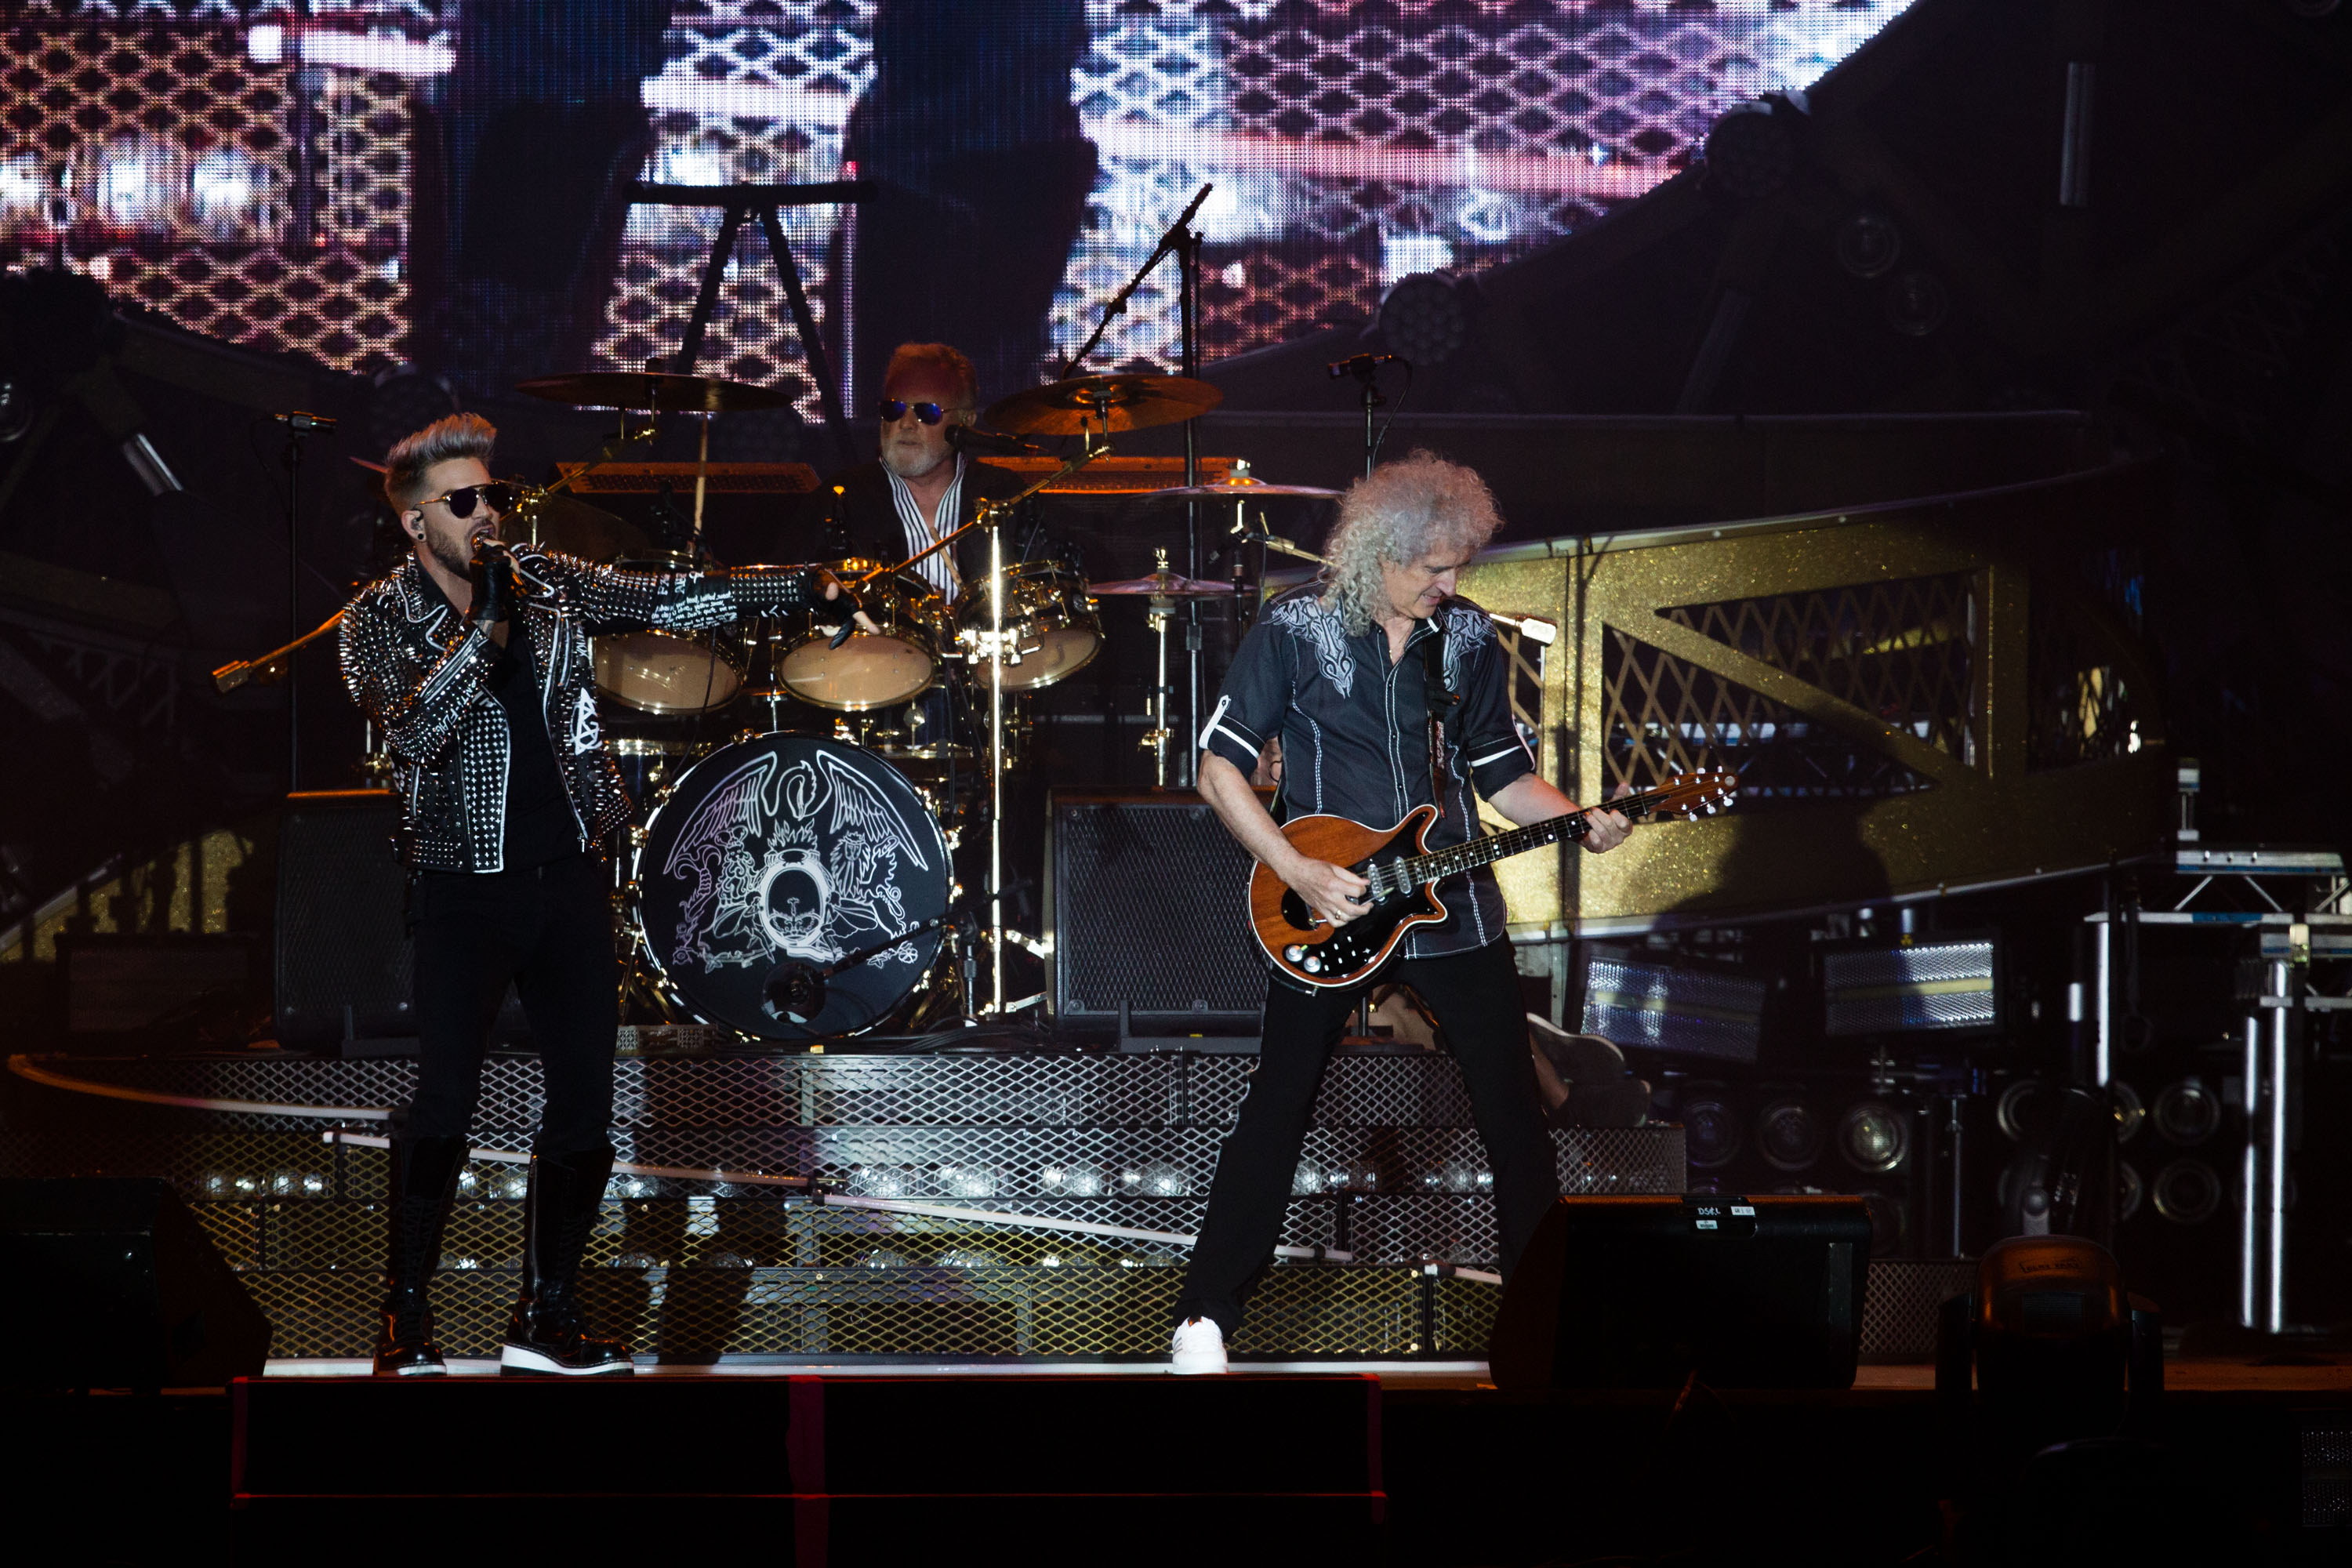 Rock in Rio - Lisboa 2016:Queen +Adam Lambert no  Palco Mundo na Cidade do Rock no Parque da Belavista em Lisboa, Portugal a 20 de Maio de 2016. Foto: AgencioZero.net